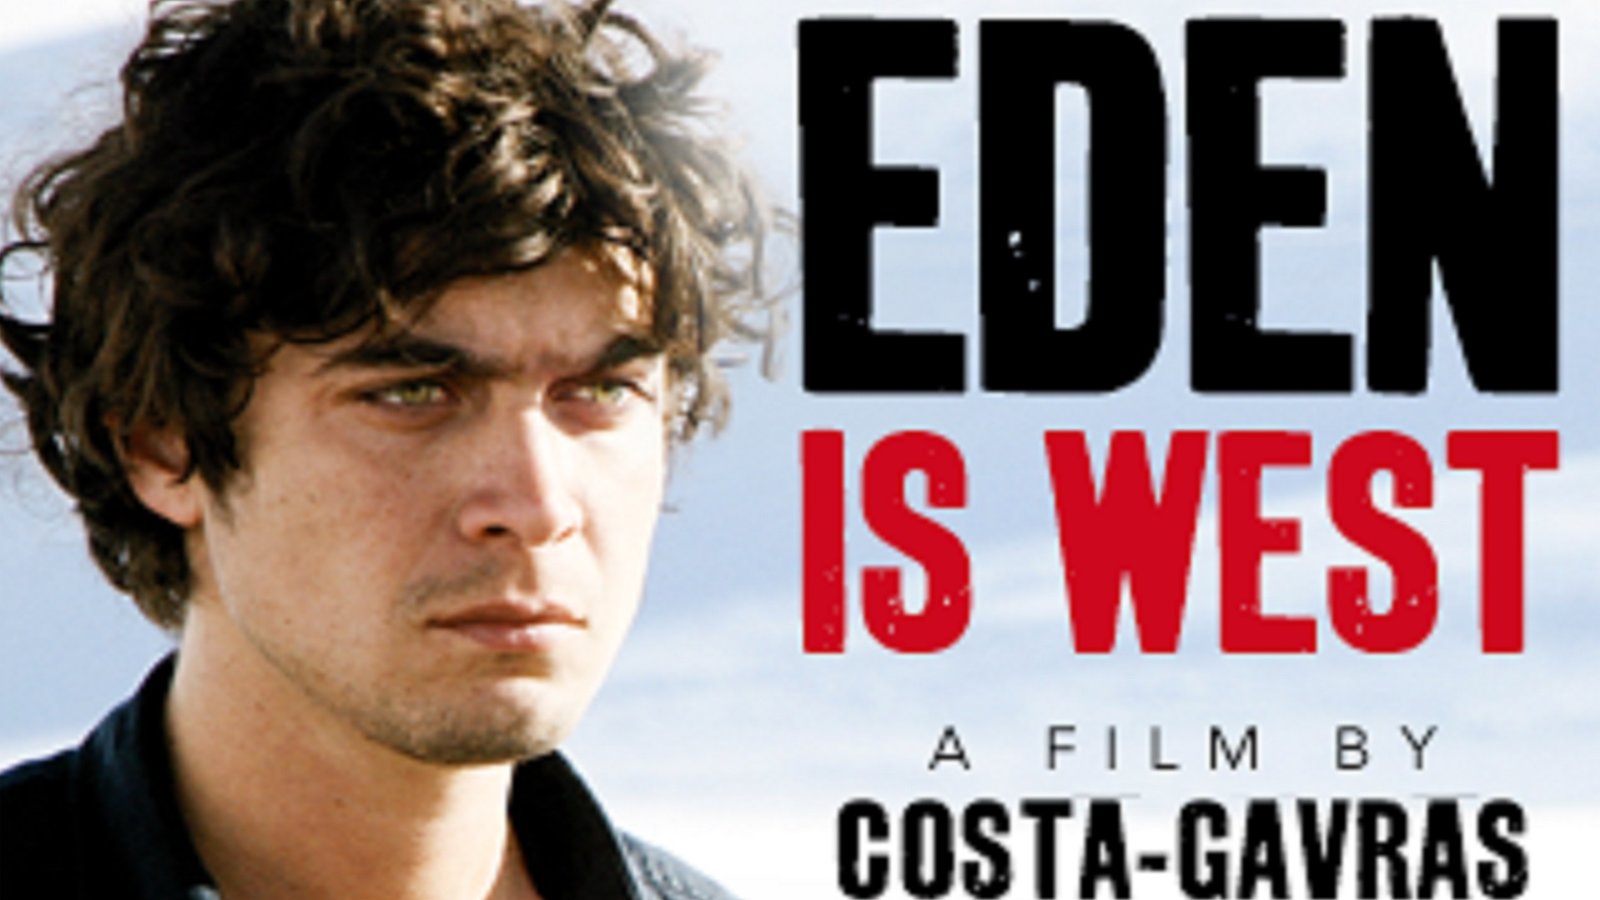 Eden west -